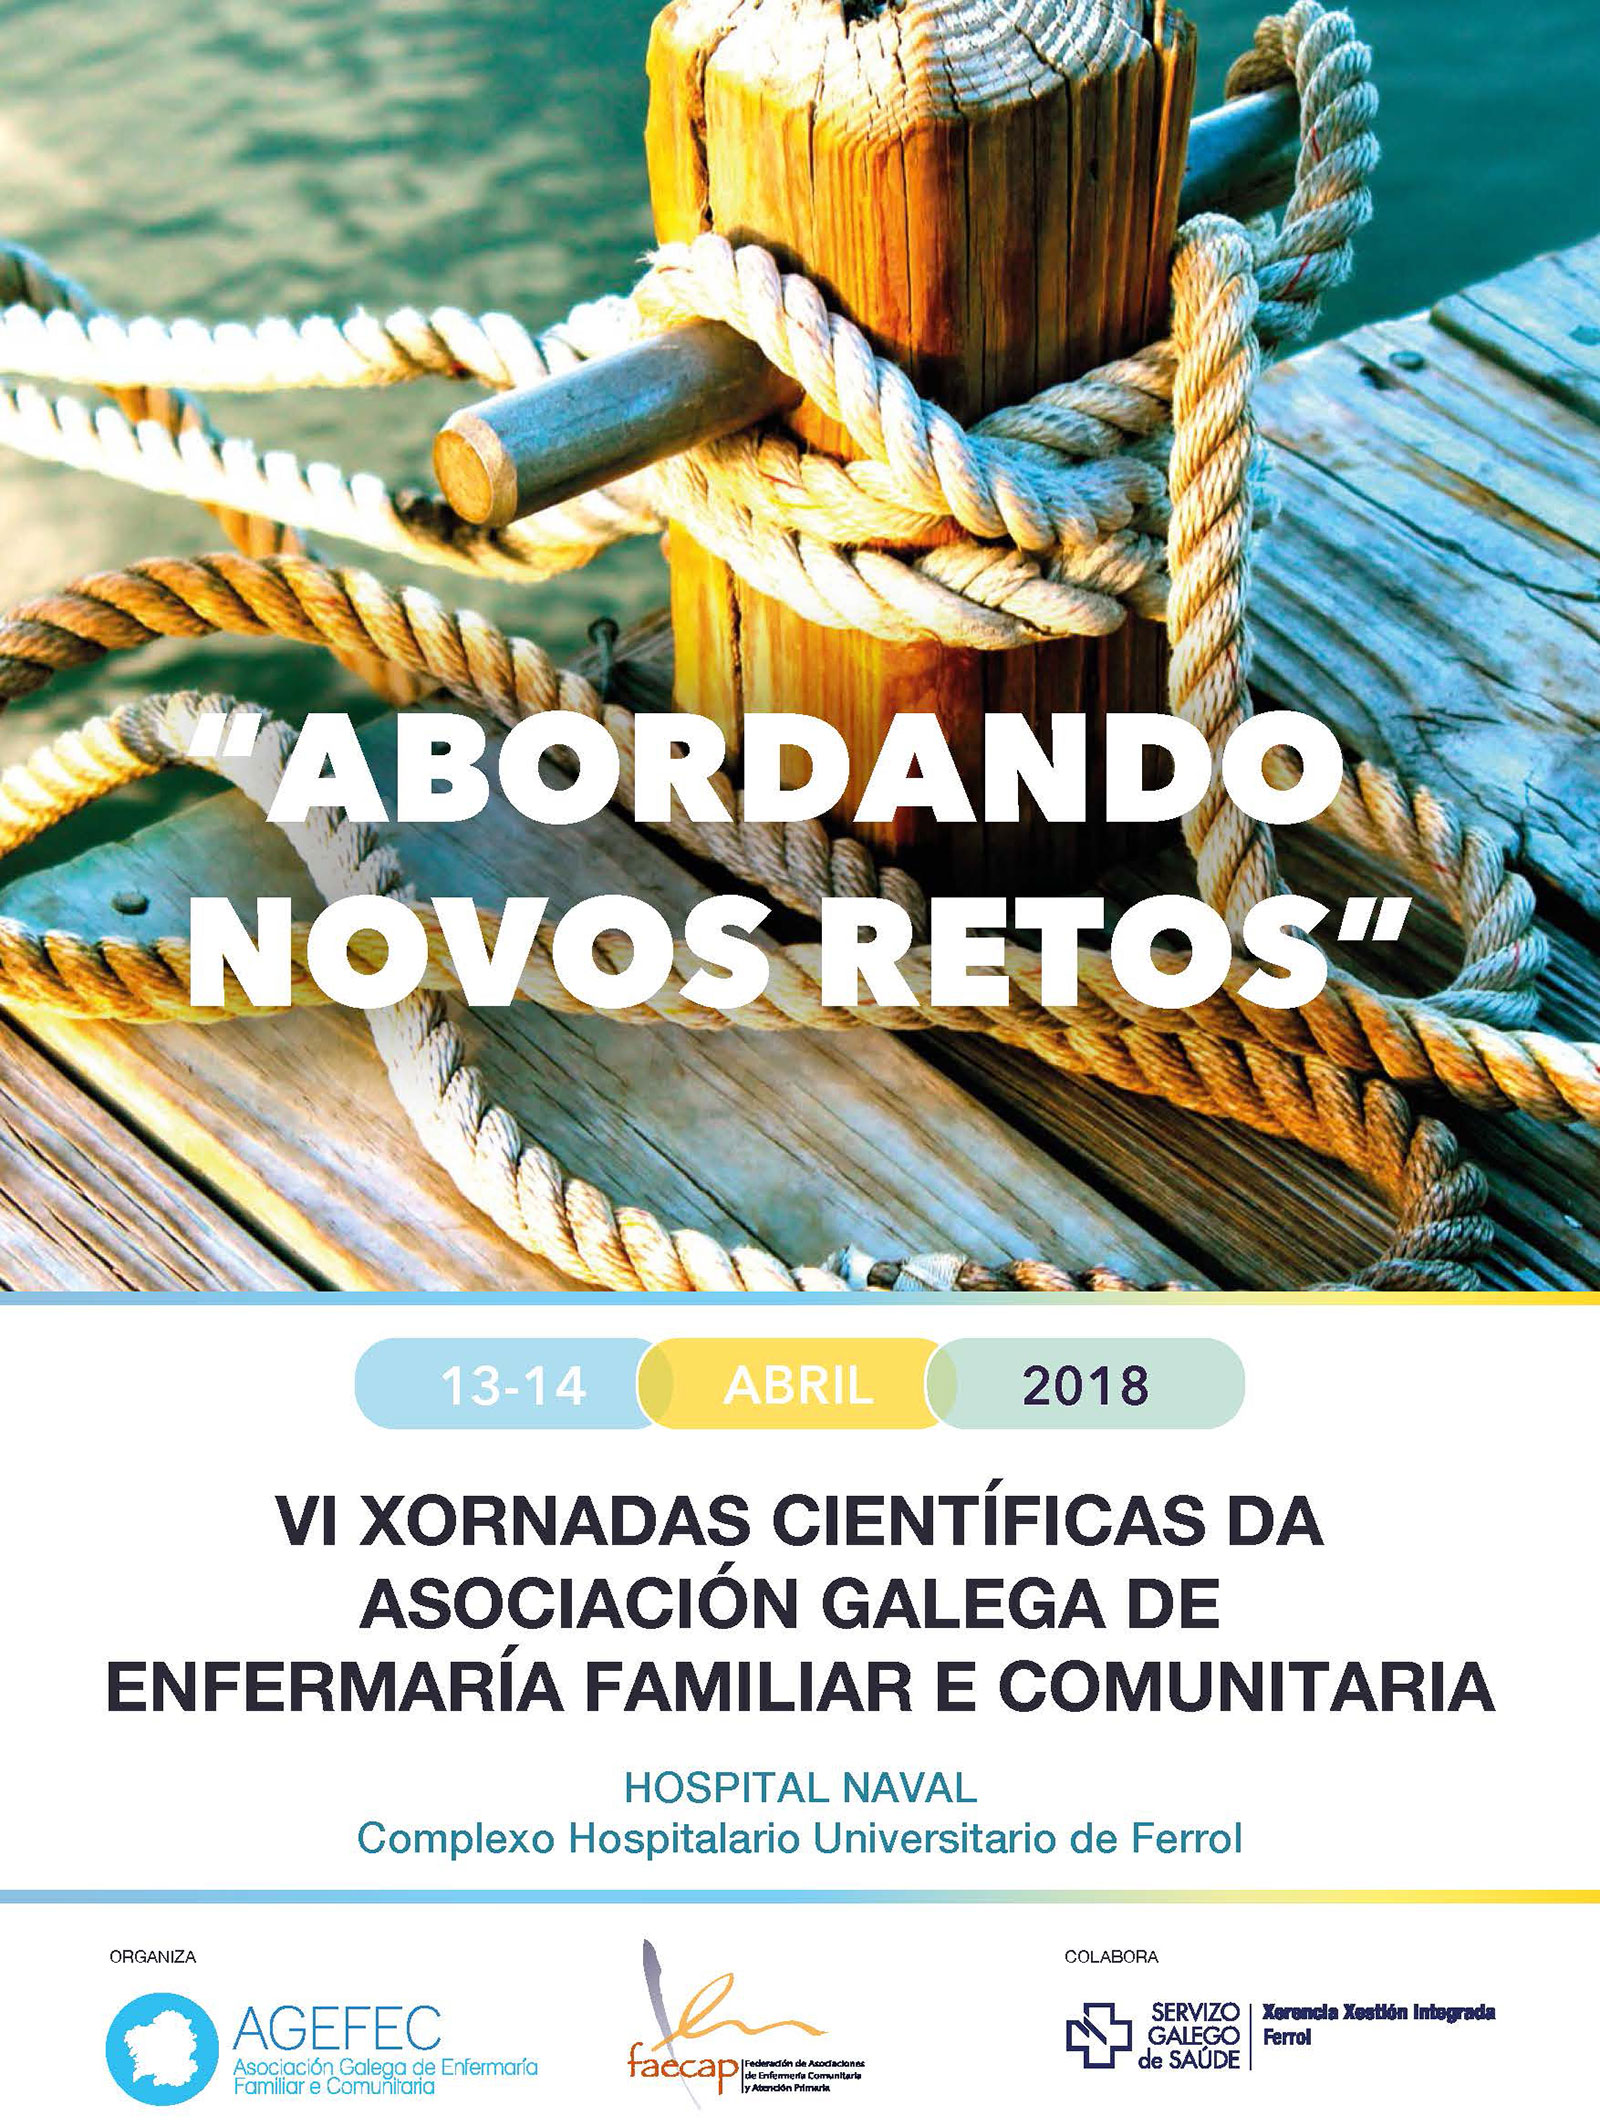 VI Xornadas Científicas da Asociación Galega de Enfermaría Familiar e Comunitaria.